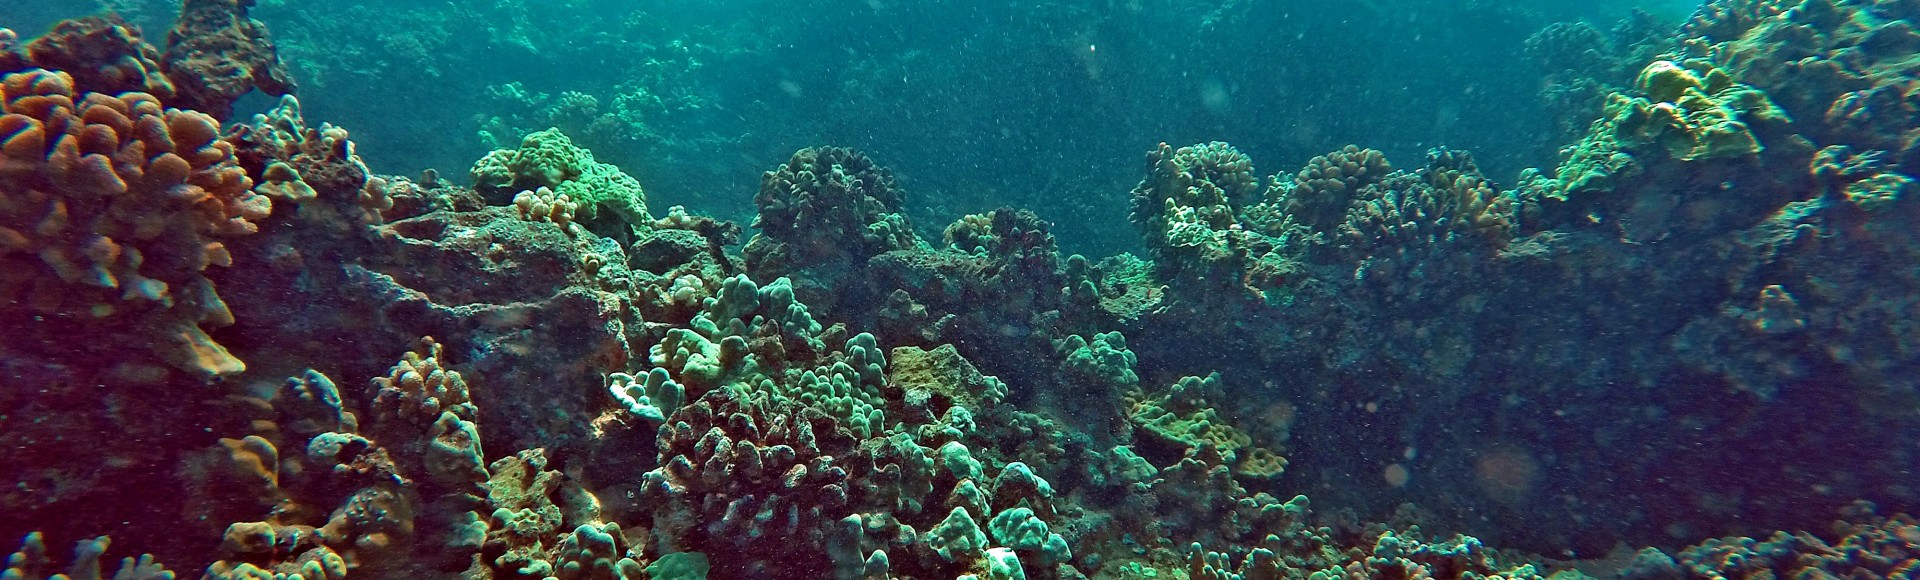 Maui Scuba Diving Video